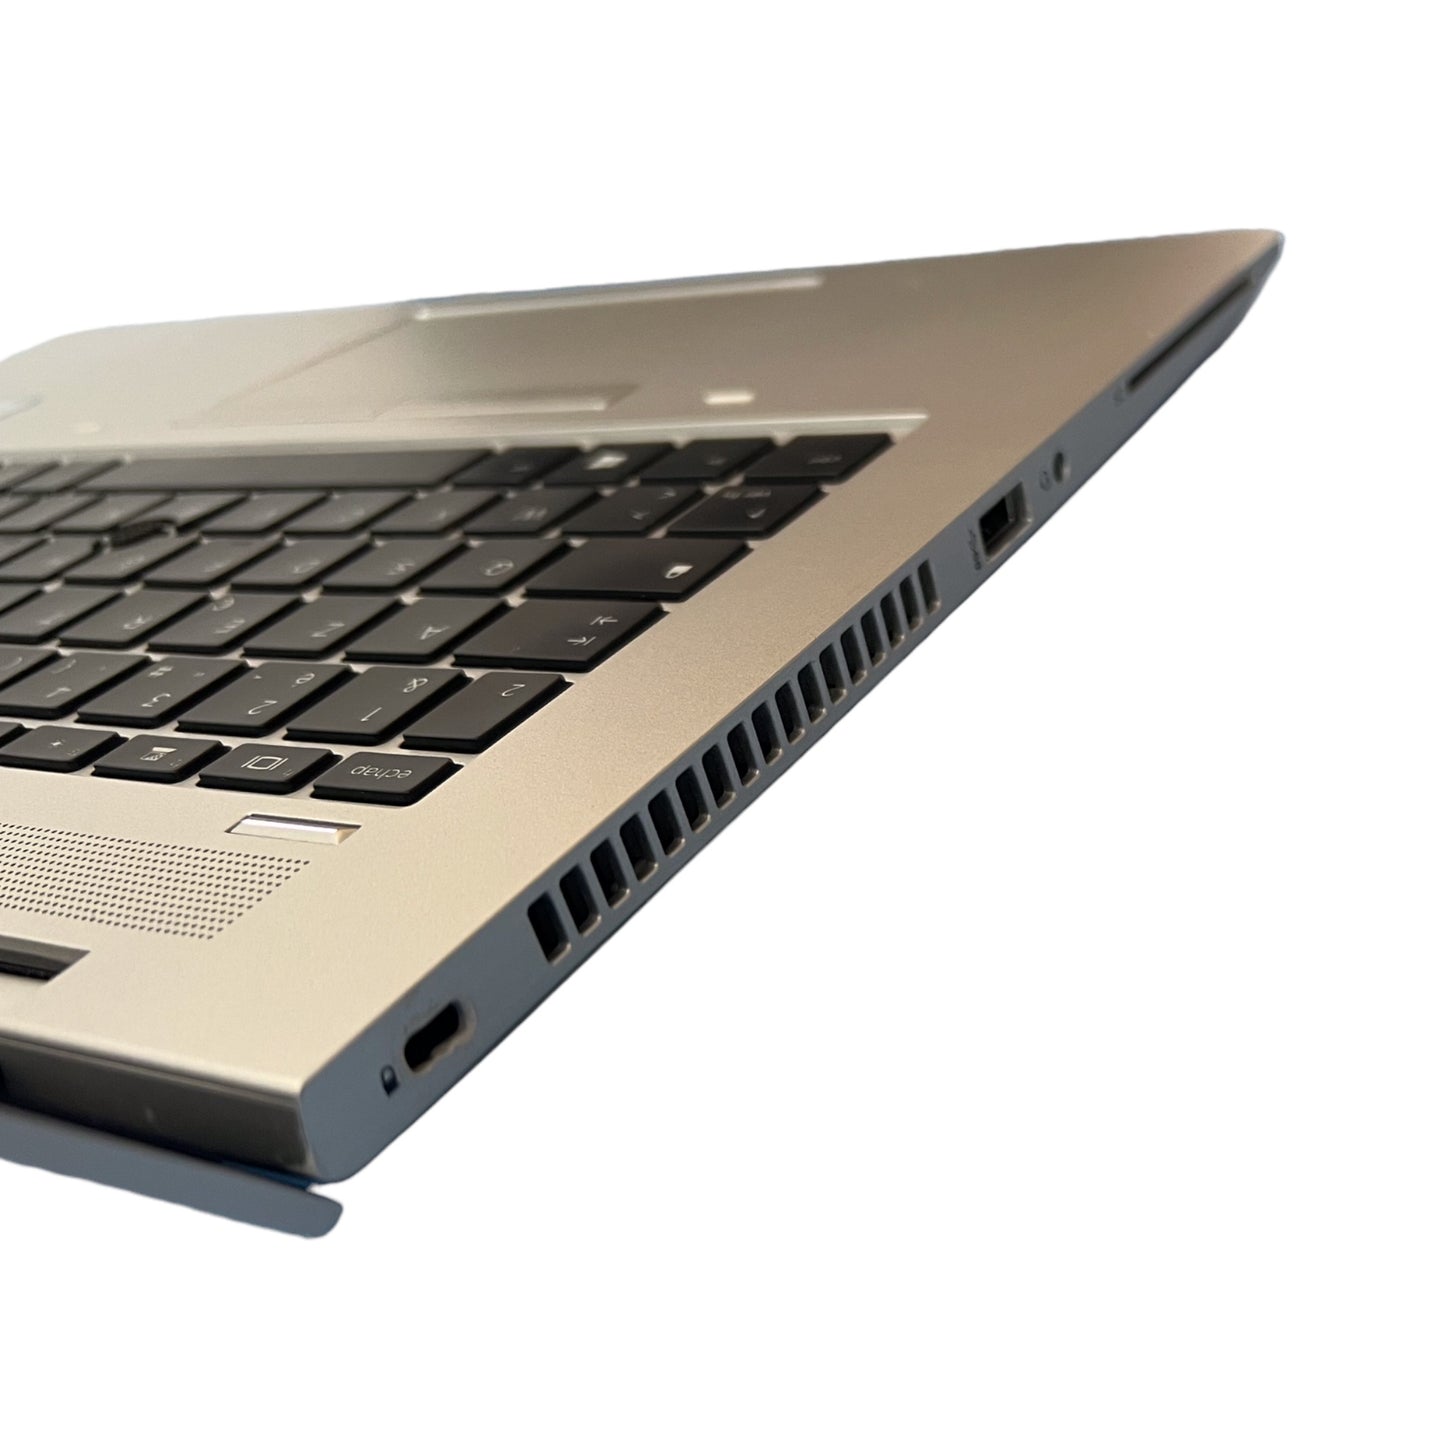 HP Probook 640 g4 con Intel Core i5-8350u, 23807118R4